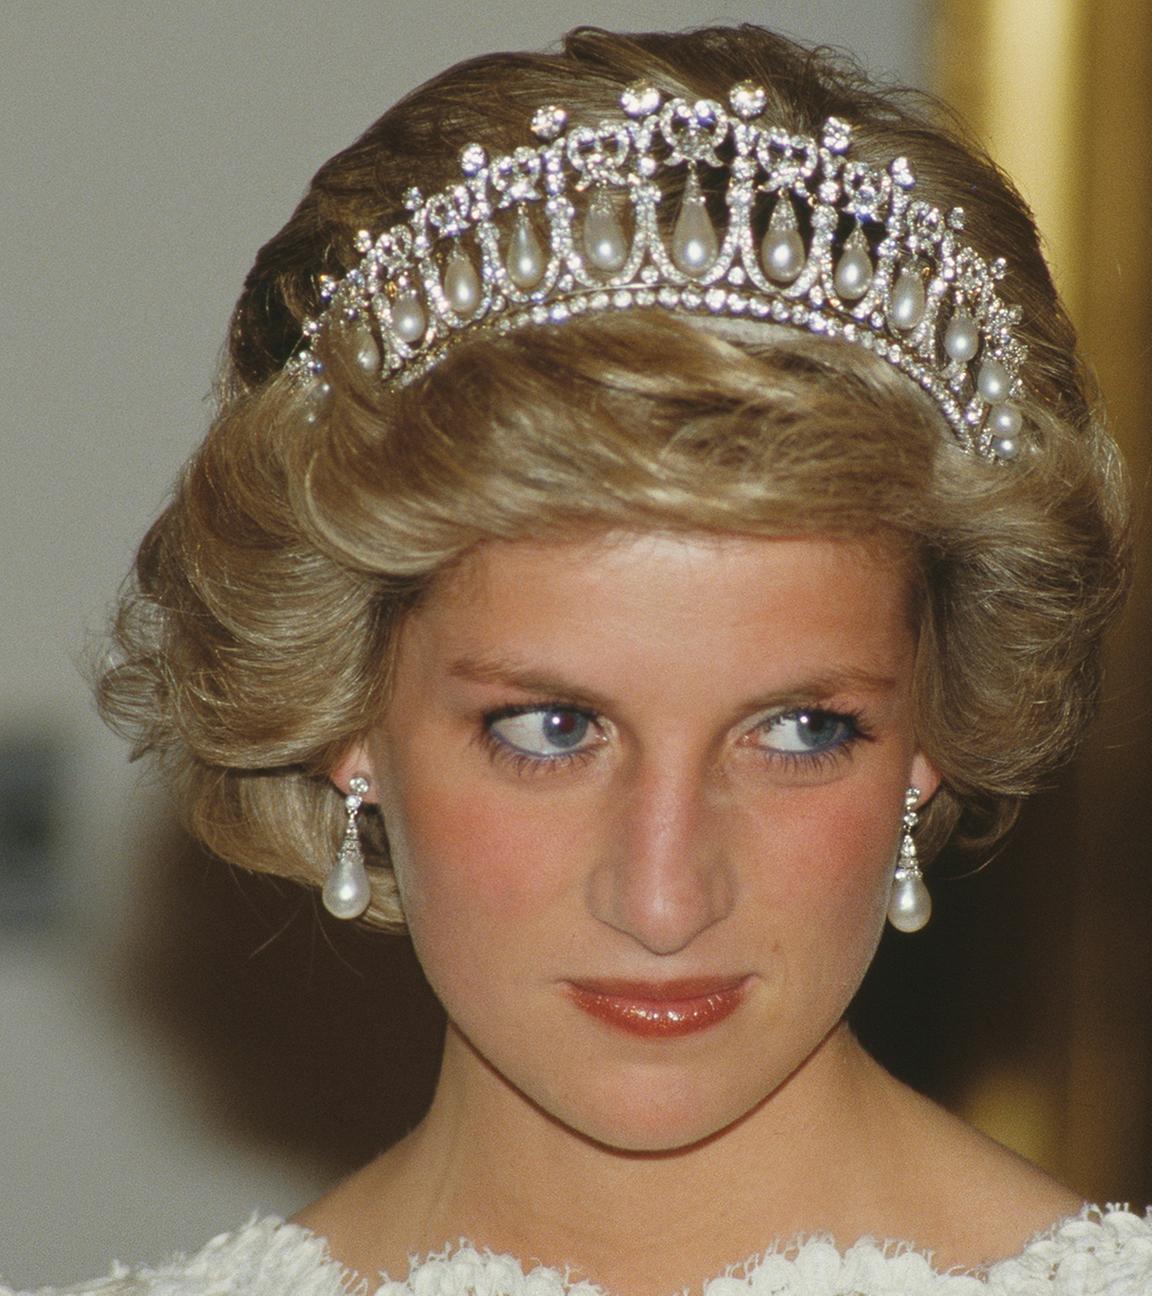 Portrait der jungen Diana in festlicher Kleidung und mit einem breiten Diadem